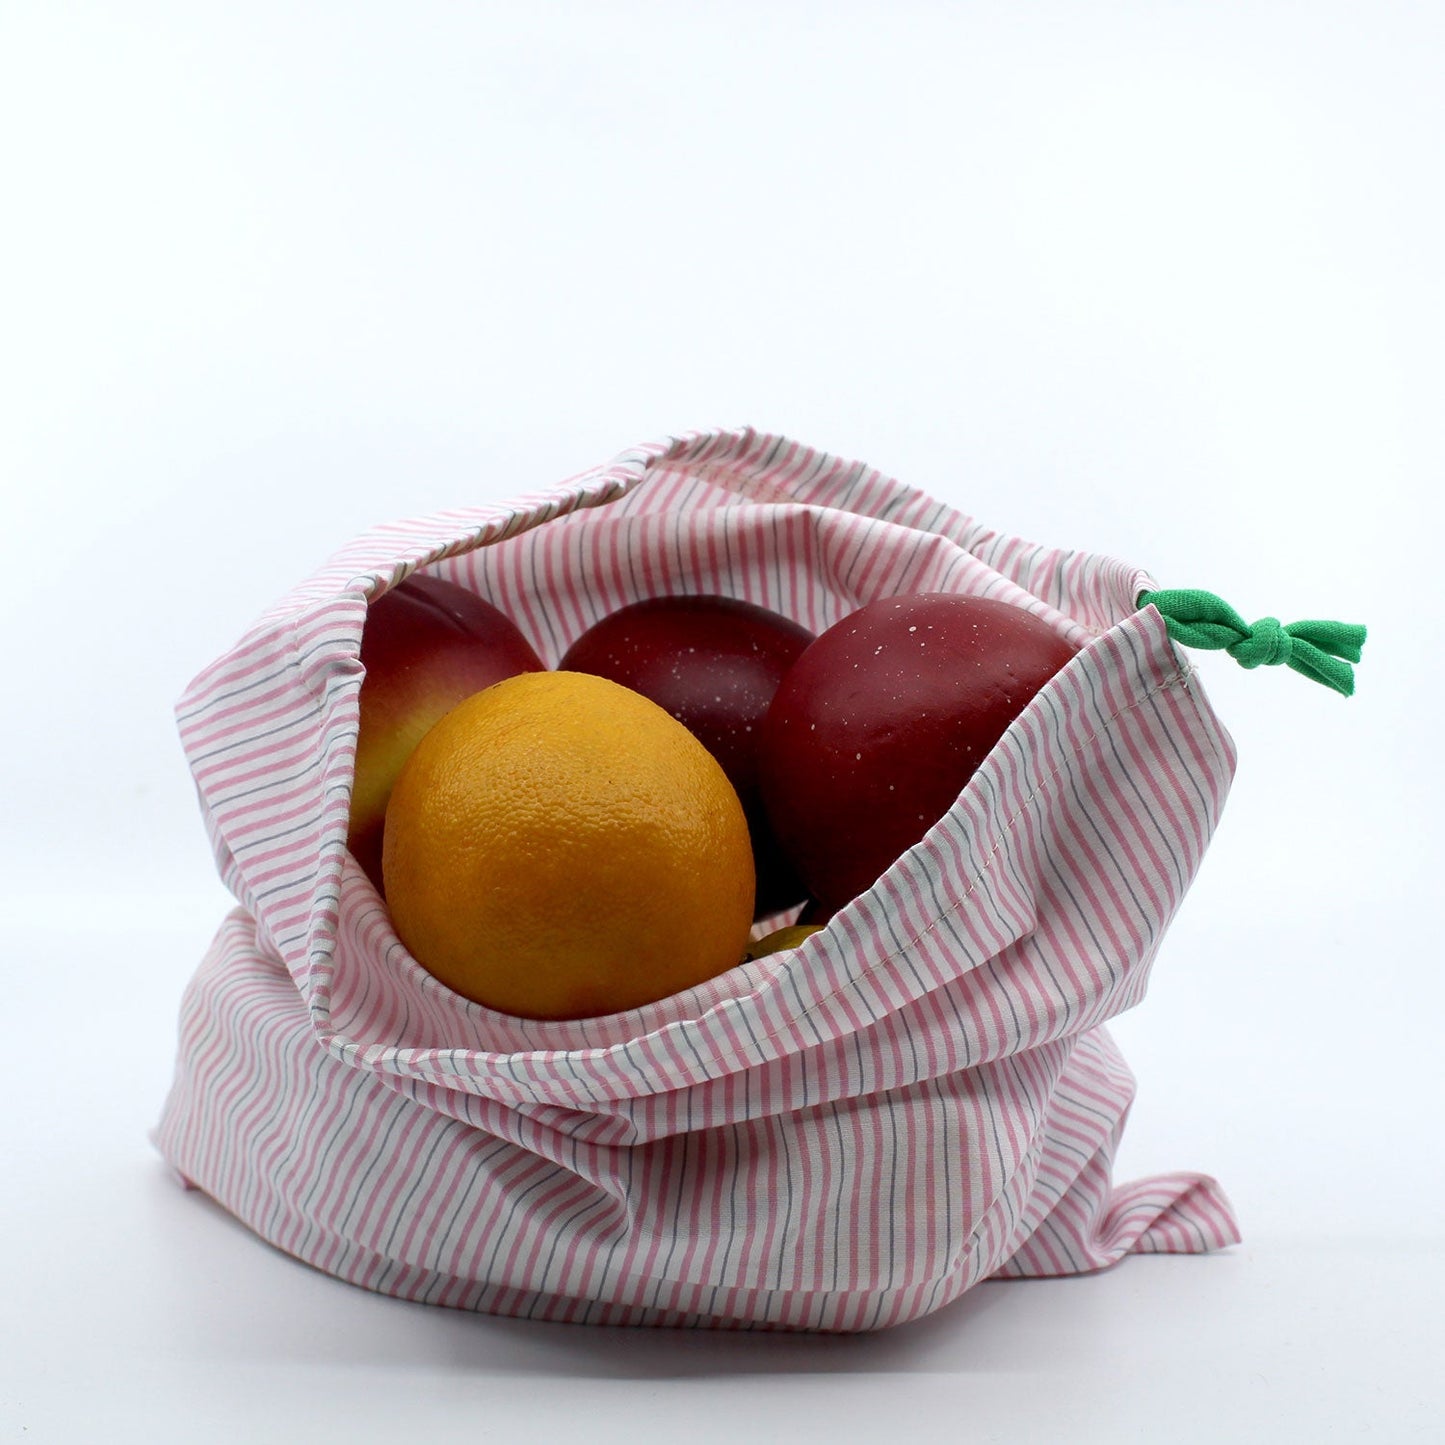 upcycled produce bag full of fruit